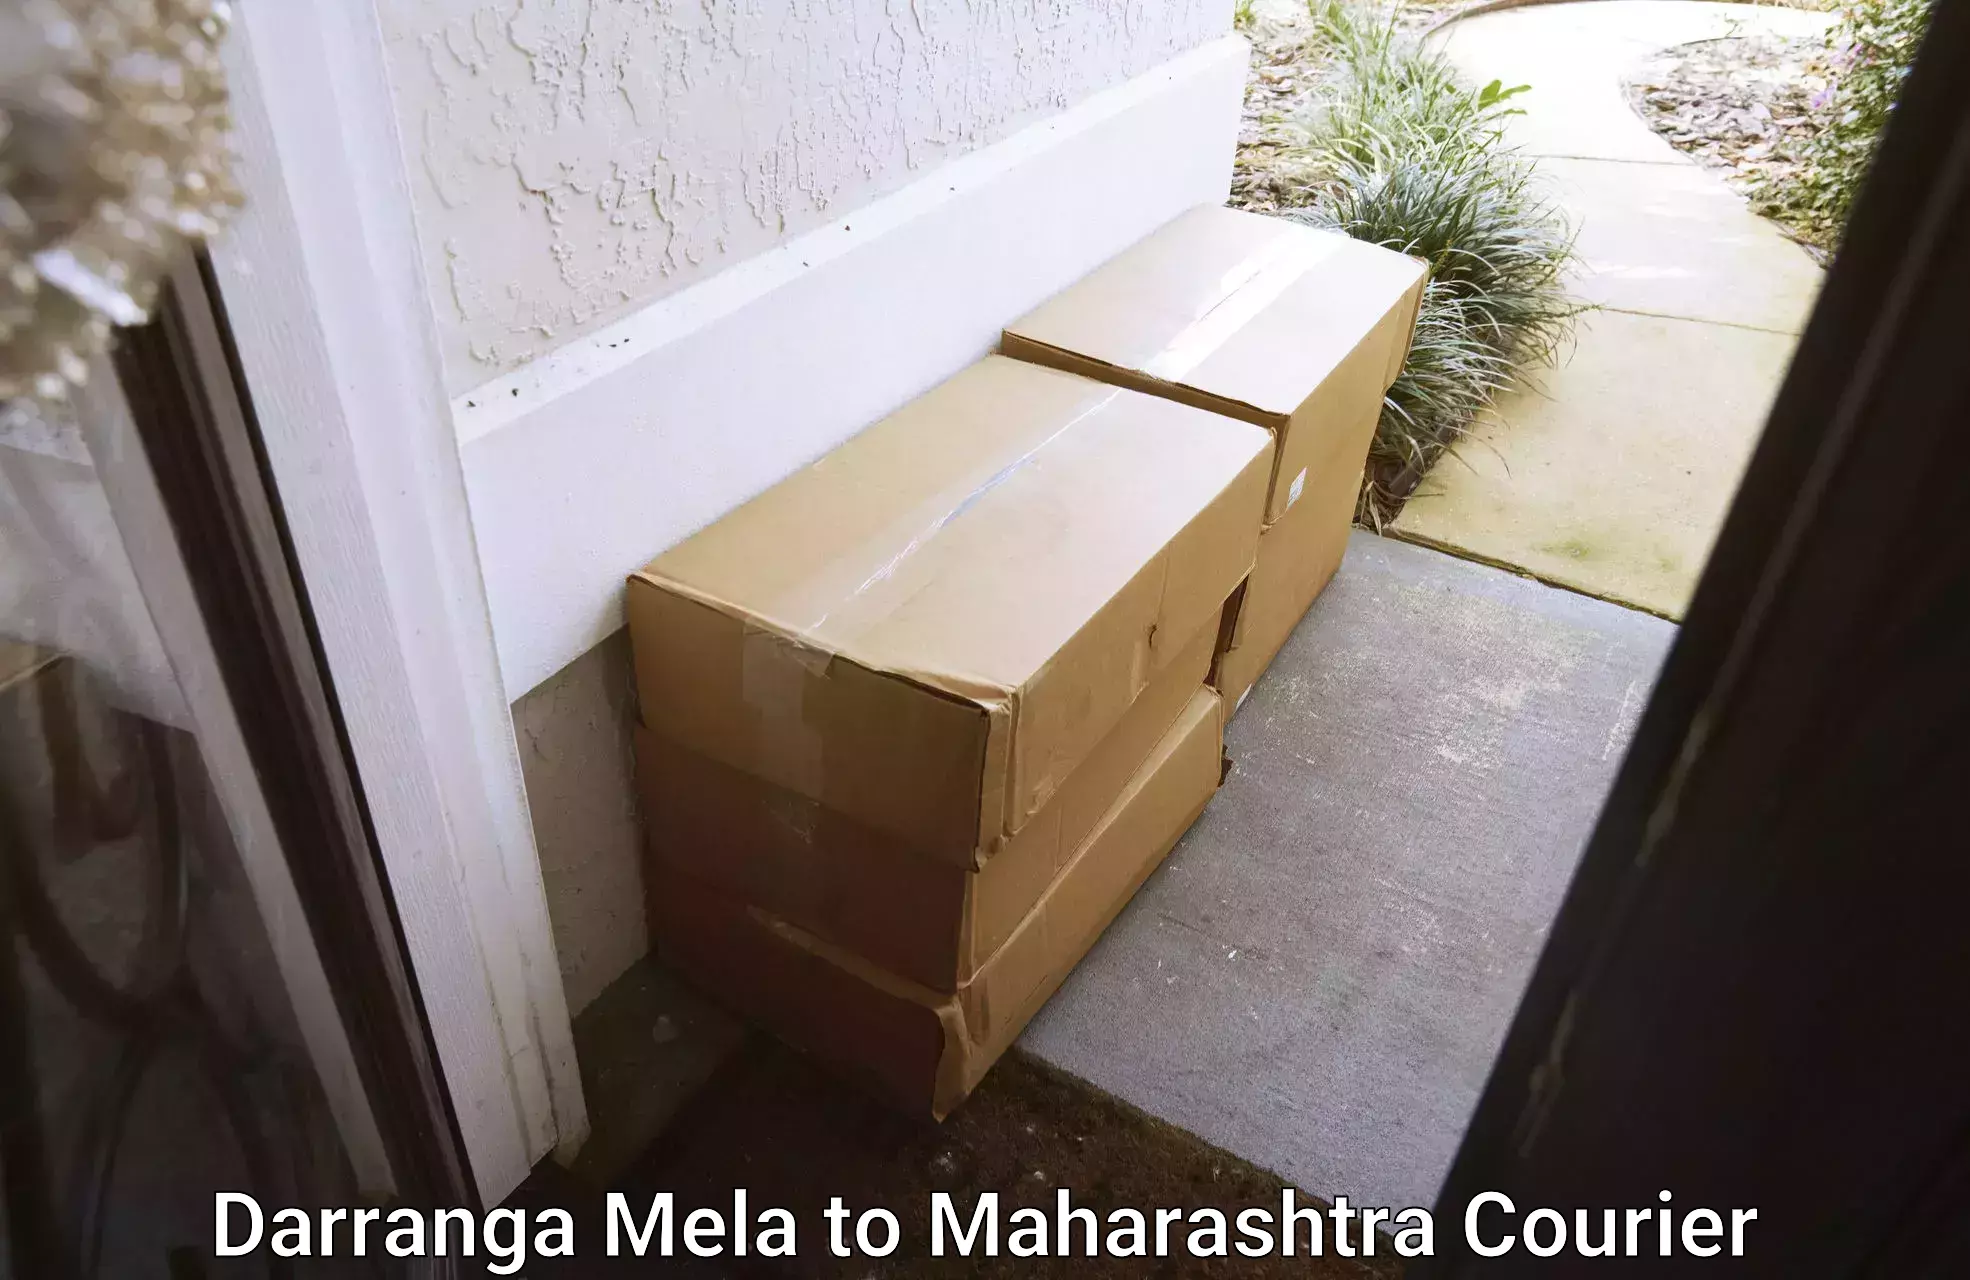 Special handling courier in Darranga Mela to Bhokar